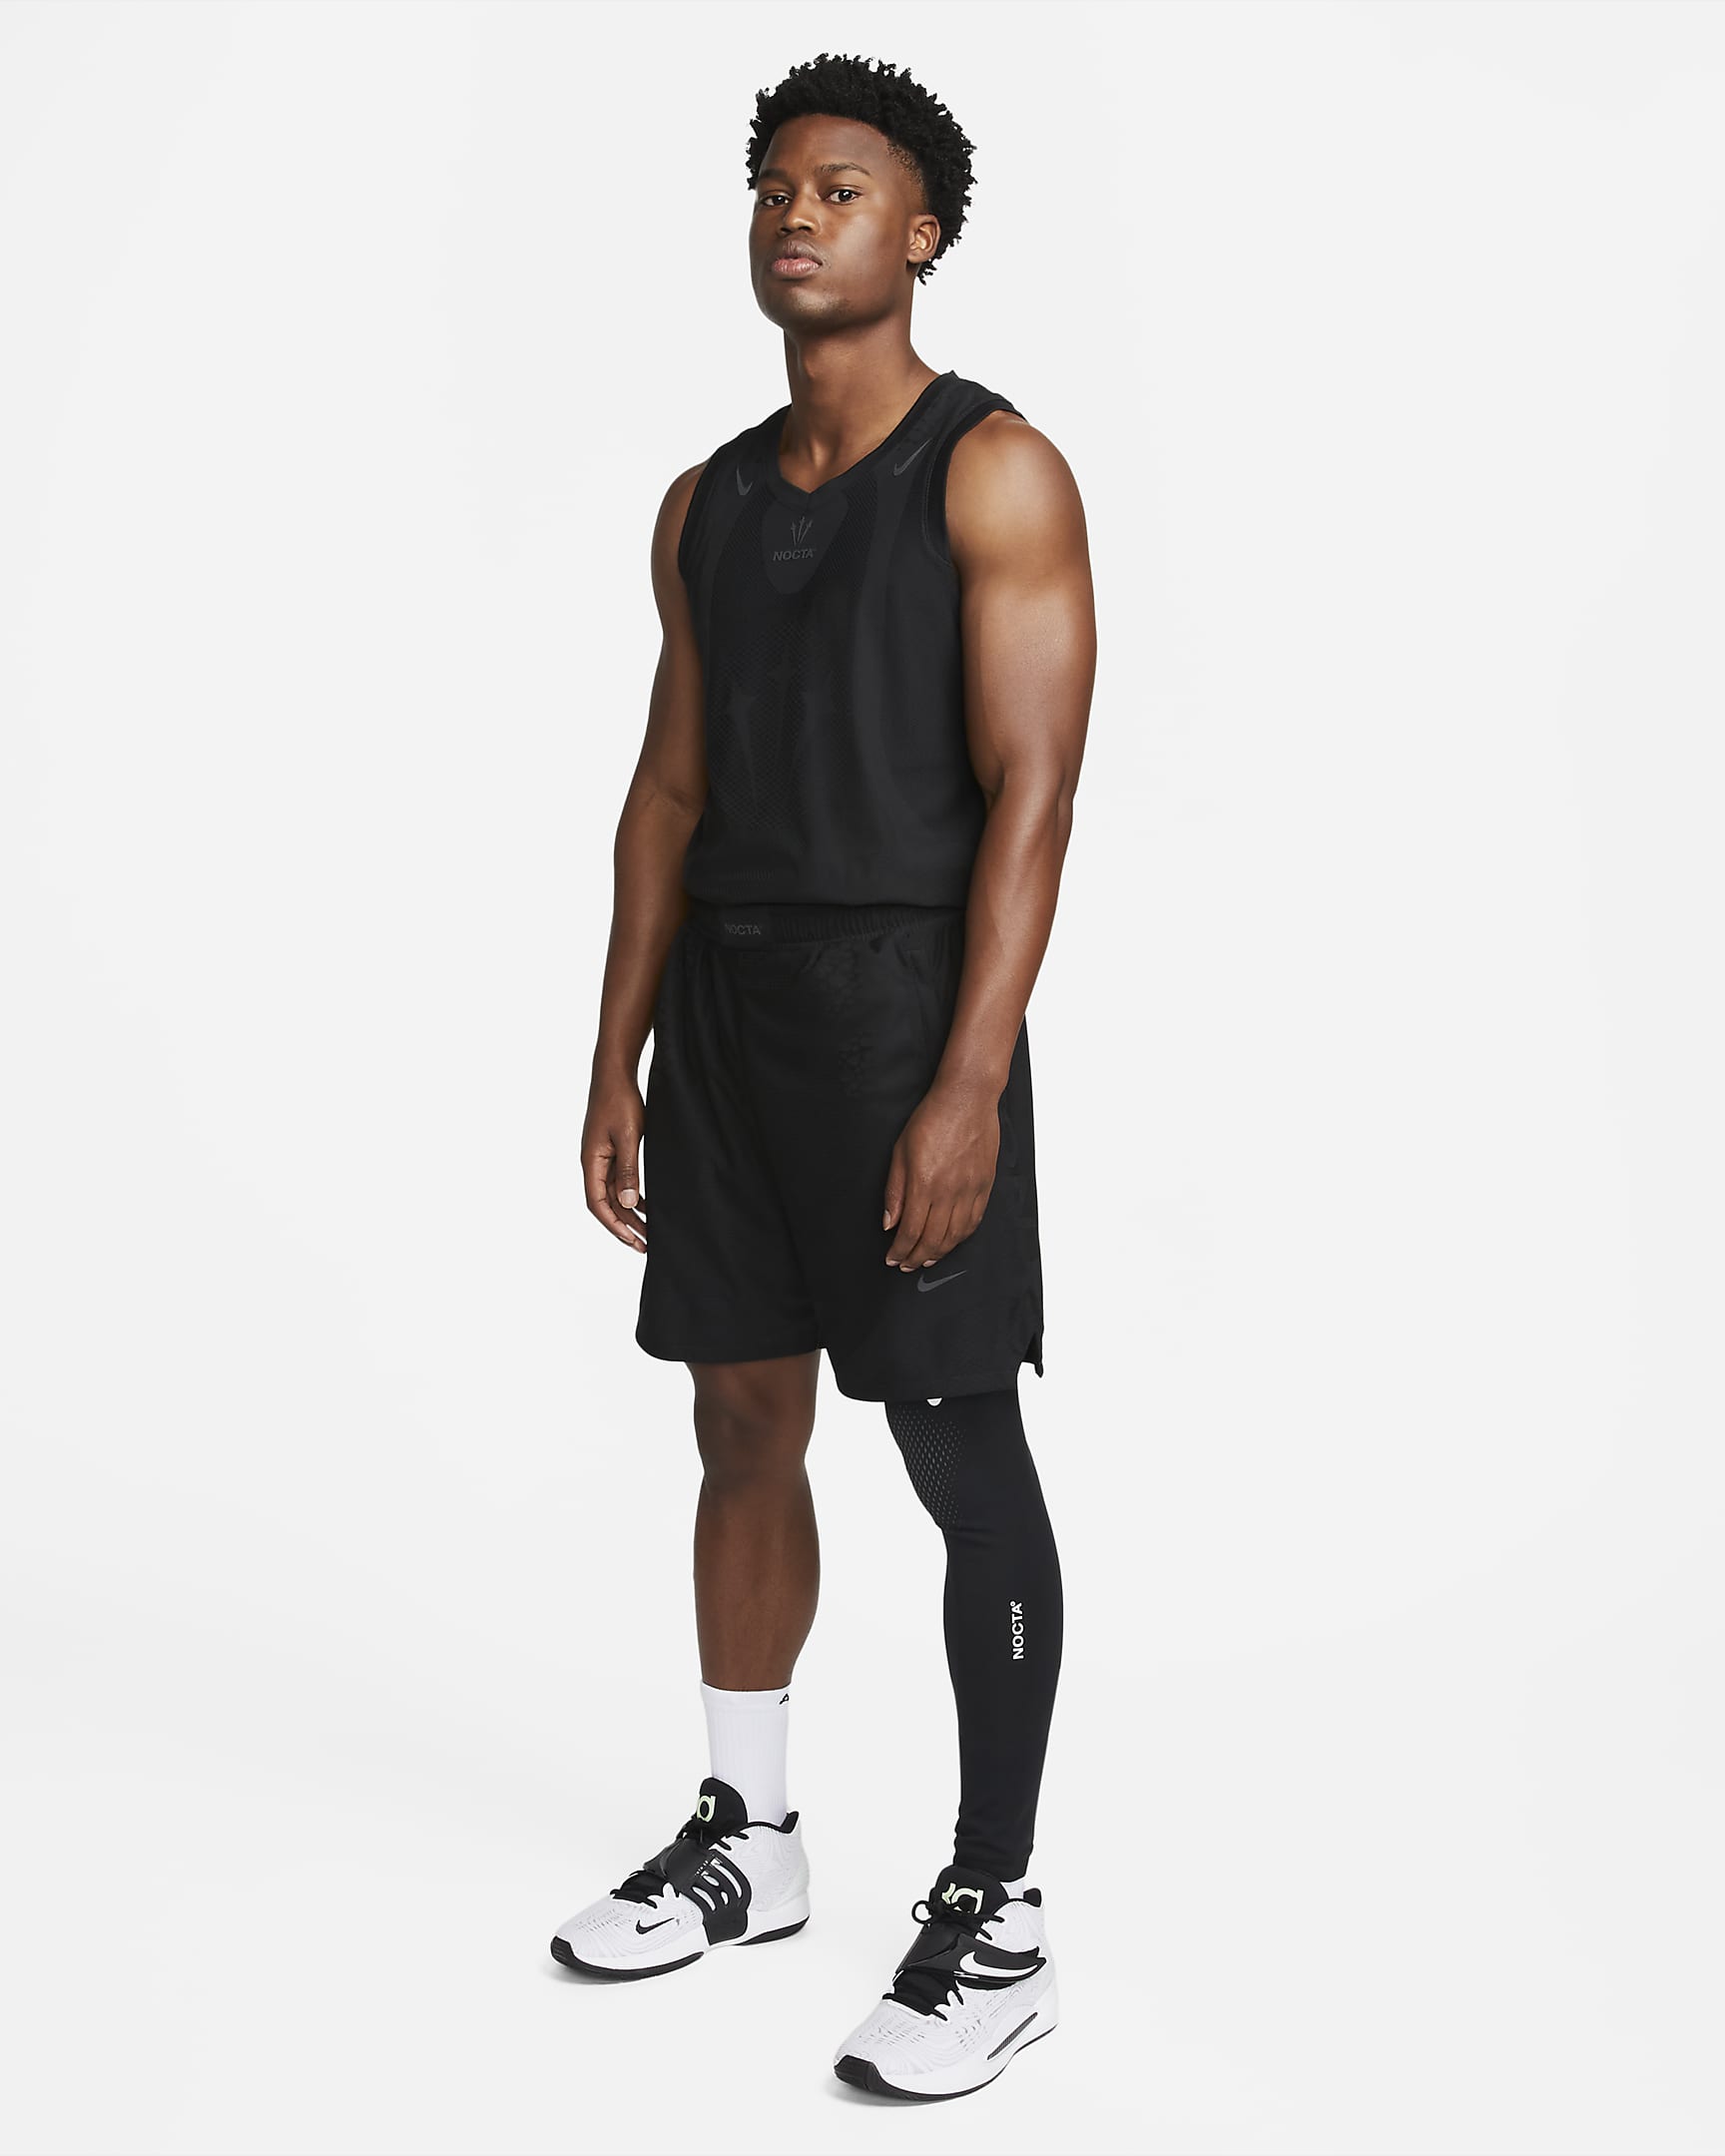 NOCTA Men's Single-Leg Tights (Left). Nike PH